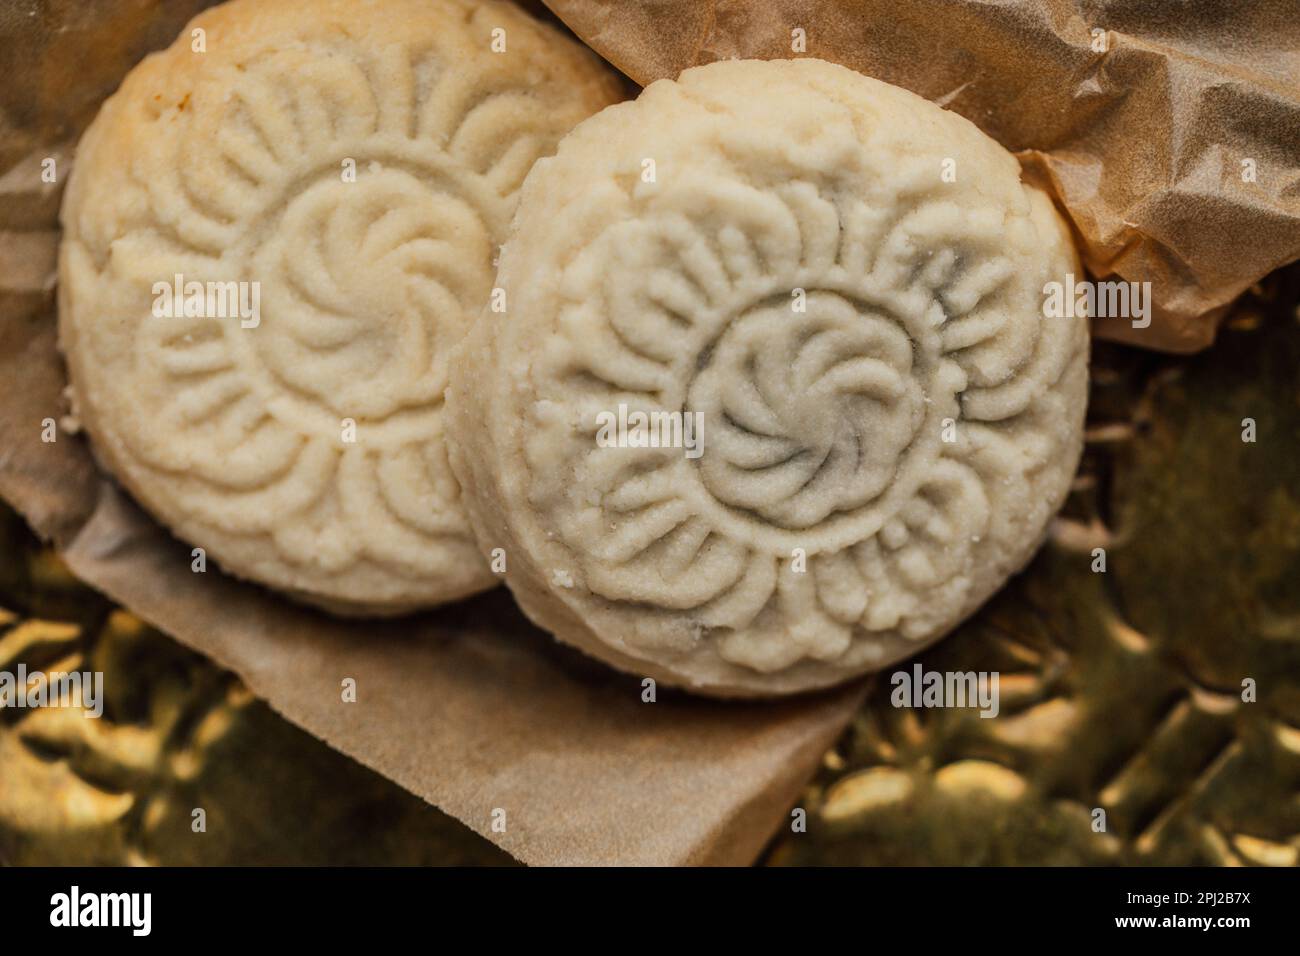 gros plan de maamoul (ma'amoul), biscuits au beurre à la date avec un motif décoratif Banque D'Images